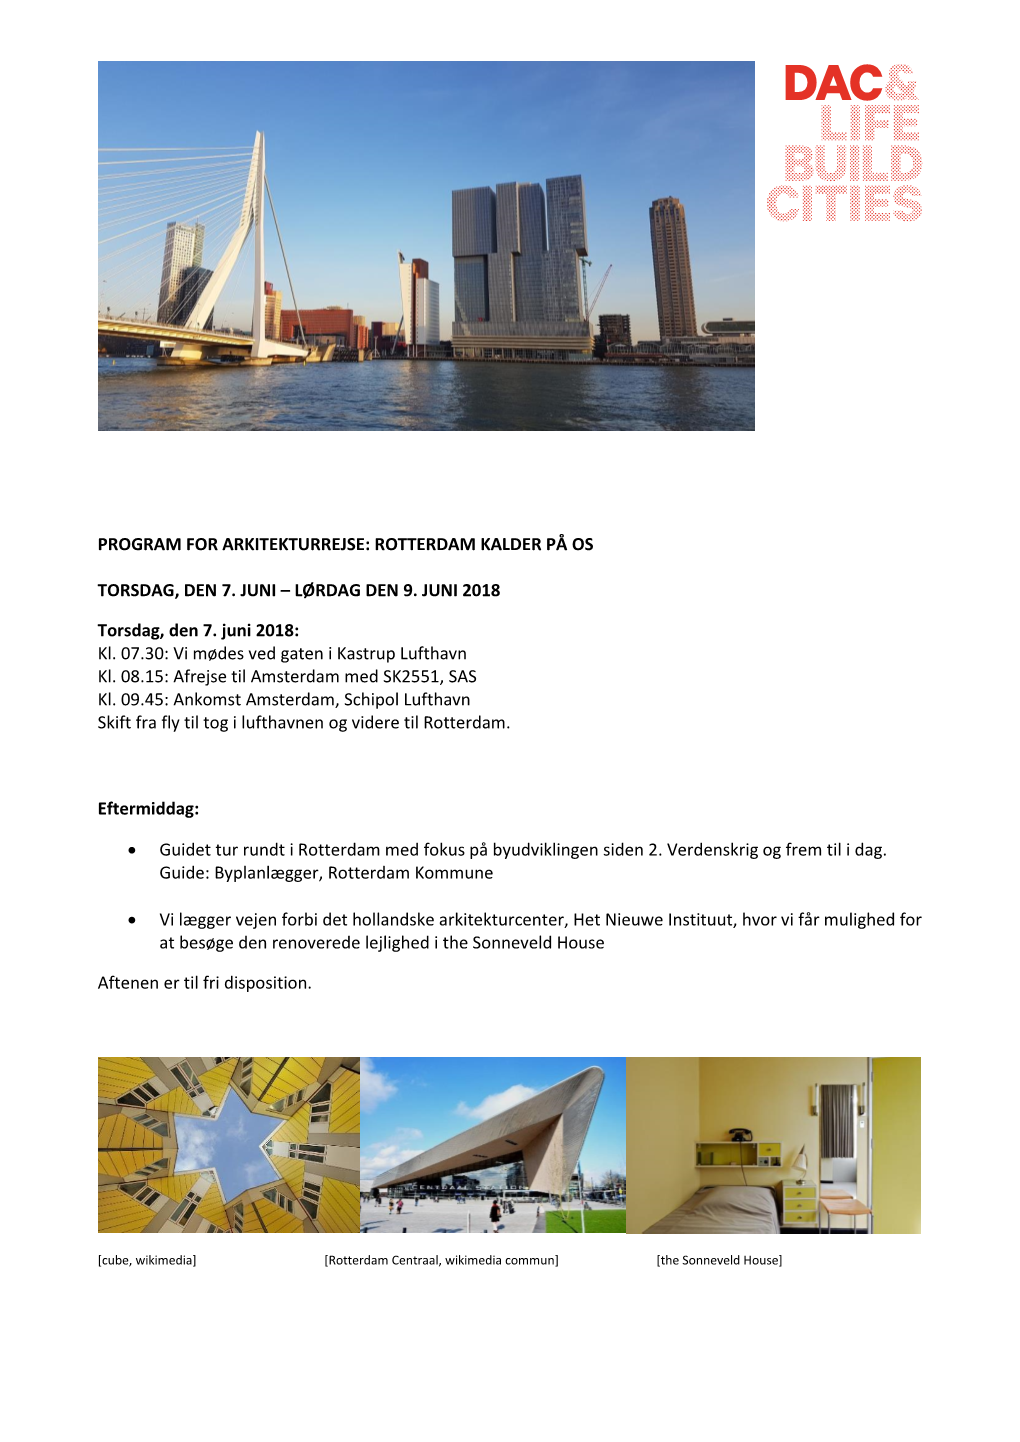 Program for Arkitekturrejse: Rotterdam Kalder På Os